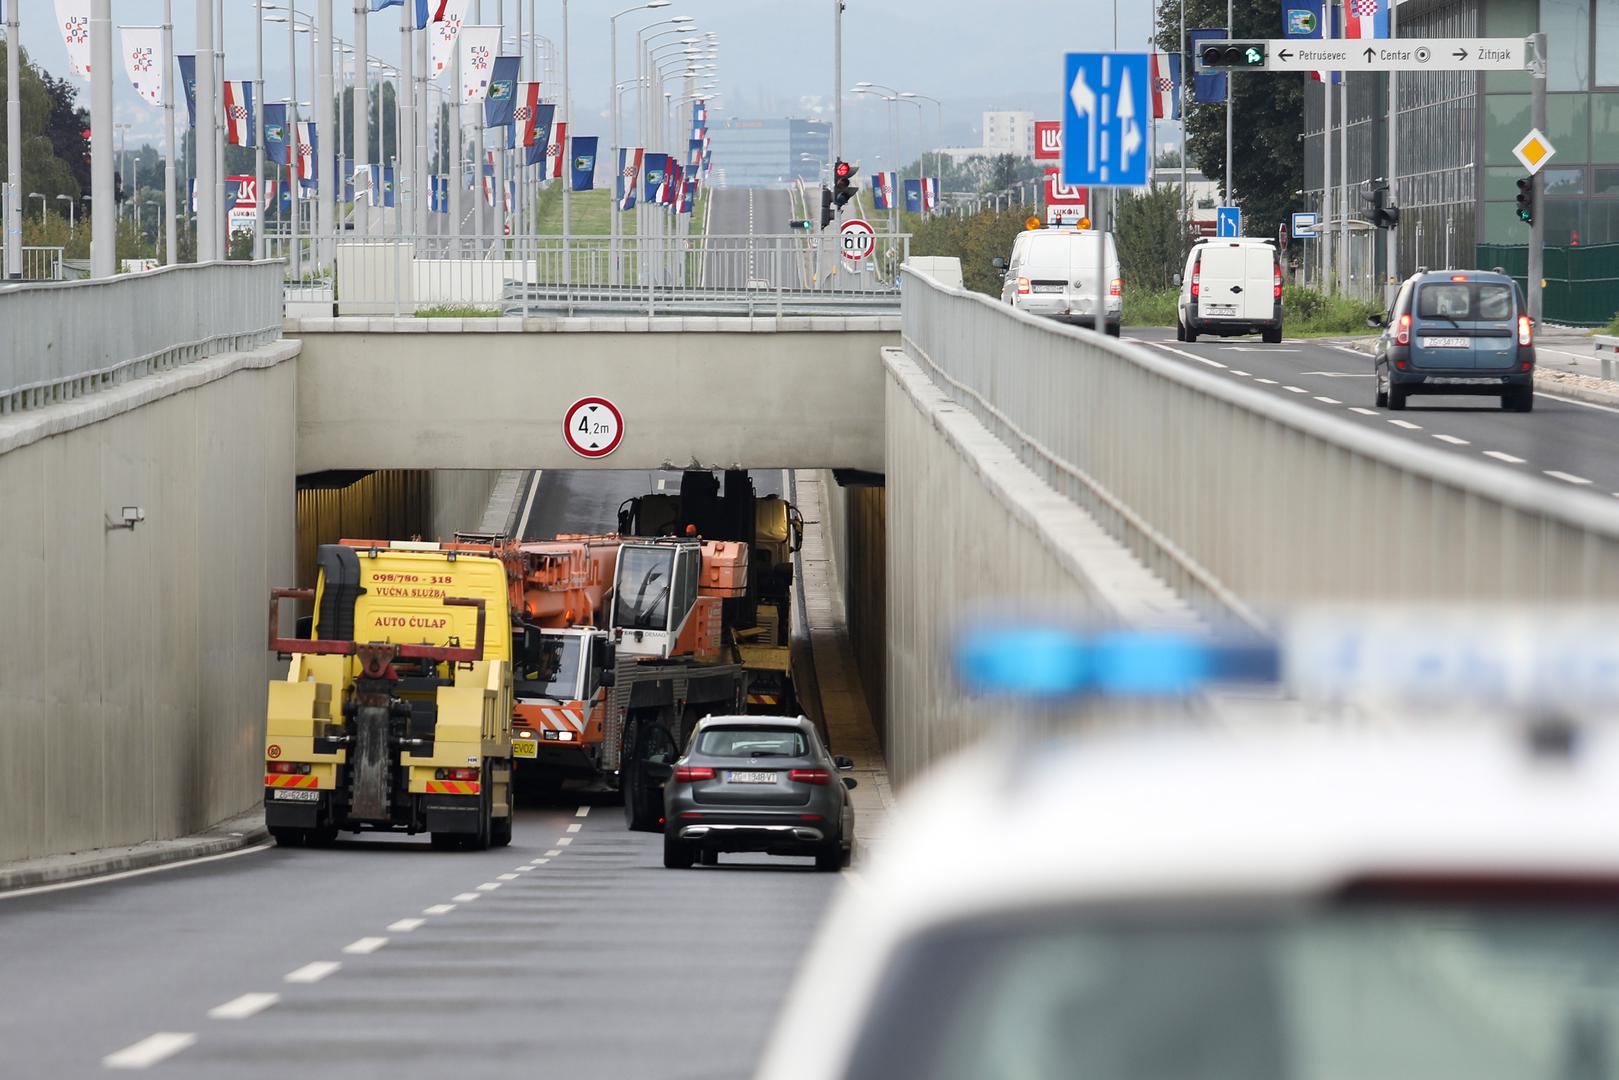 Jedan vozač kamiona nije se u utorak popodne proslavio vozeći Radničkom ulicom u Zagrebu